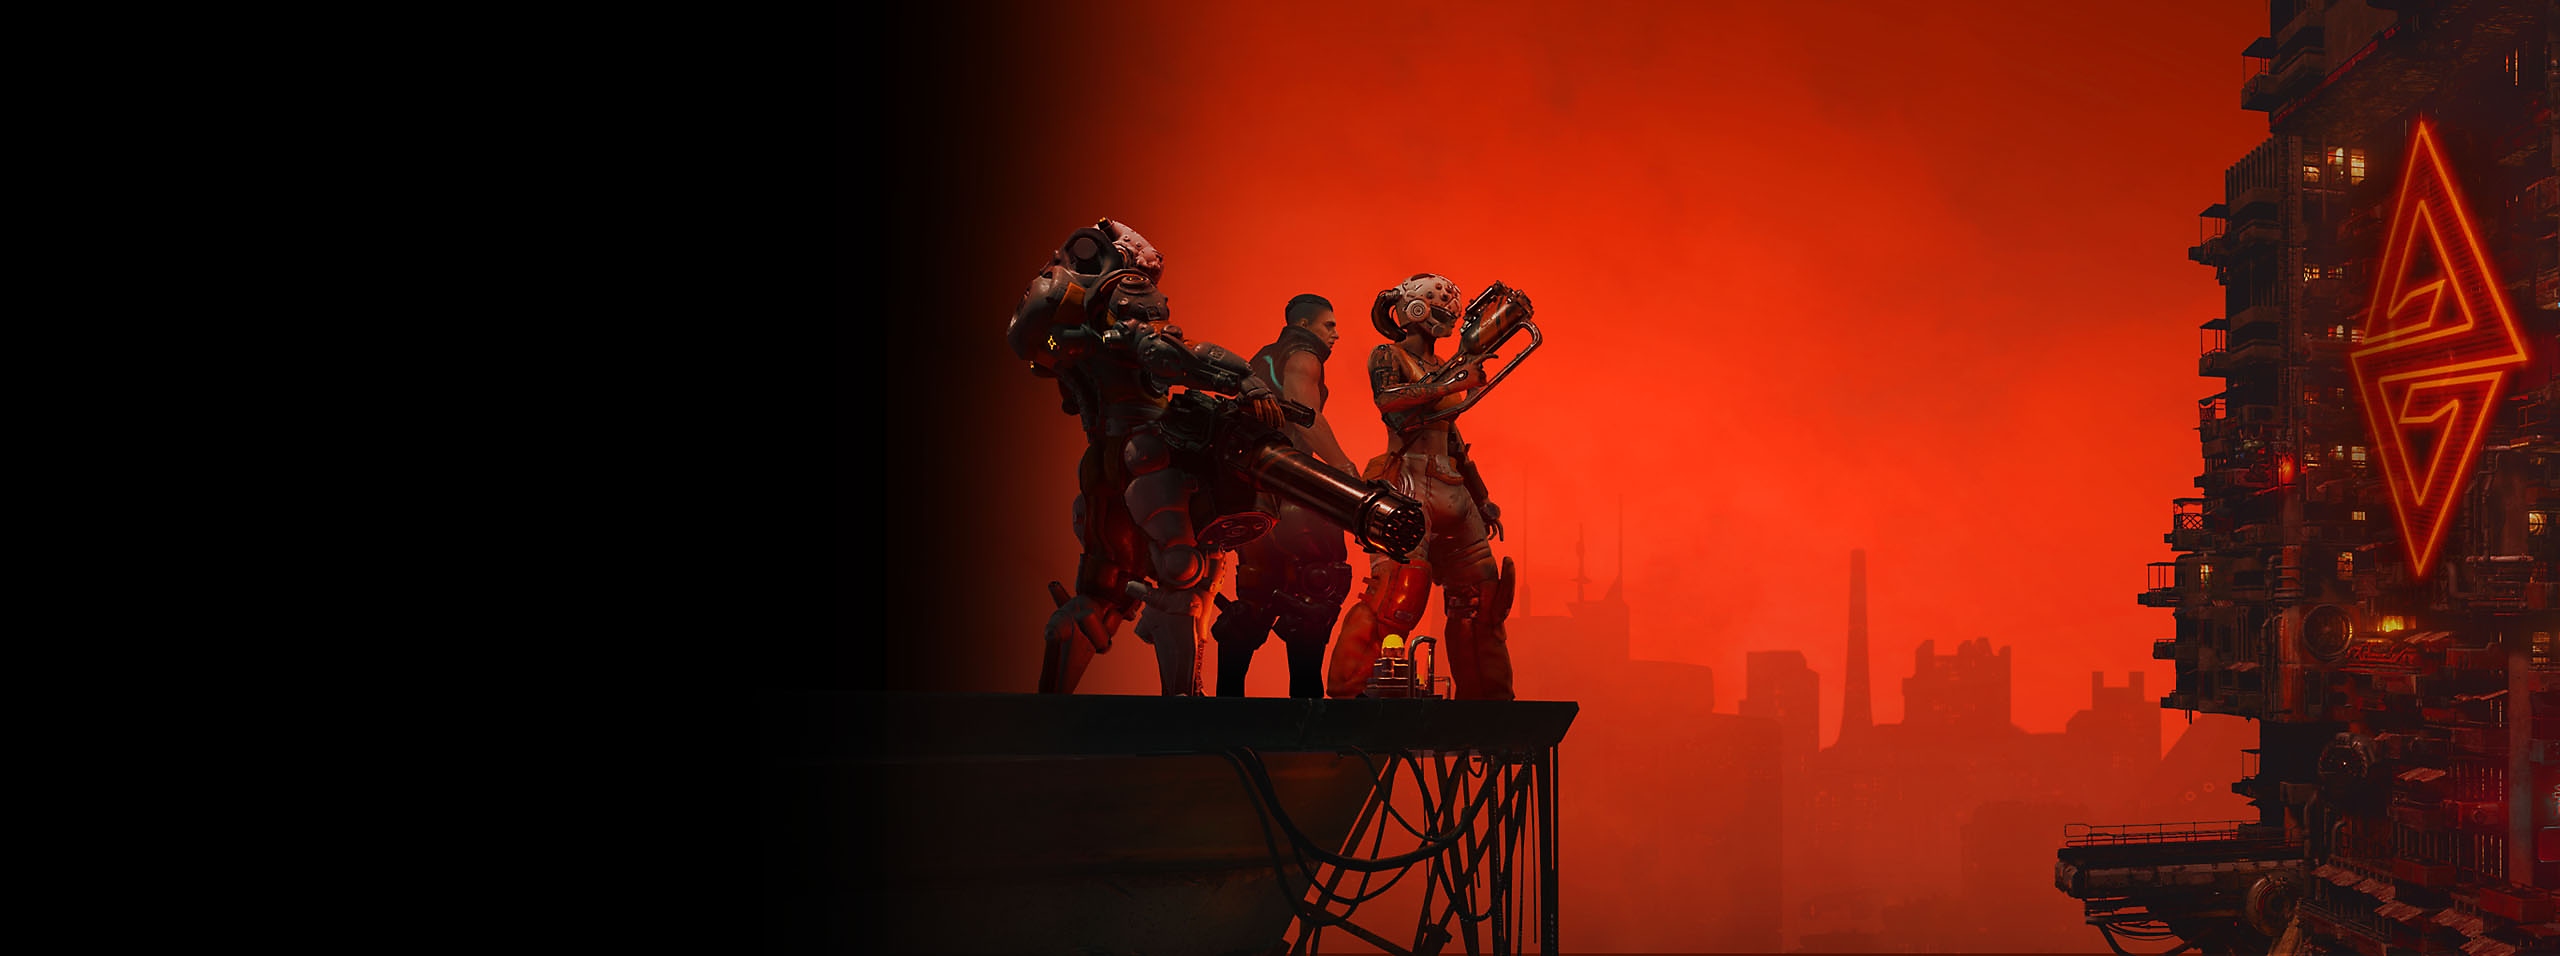 The Ascent-heldenafbeelding van drie personages en een skyline onder een rode lucht 